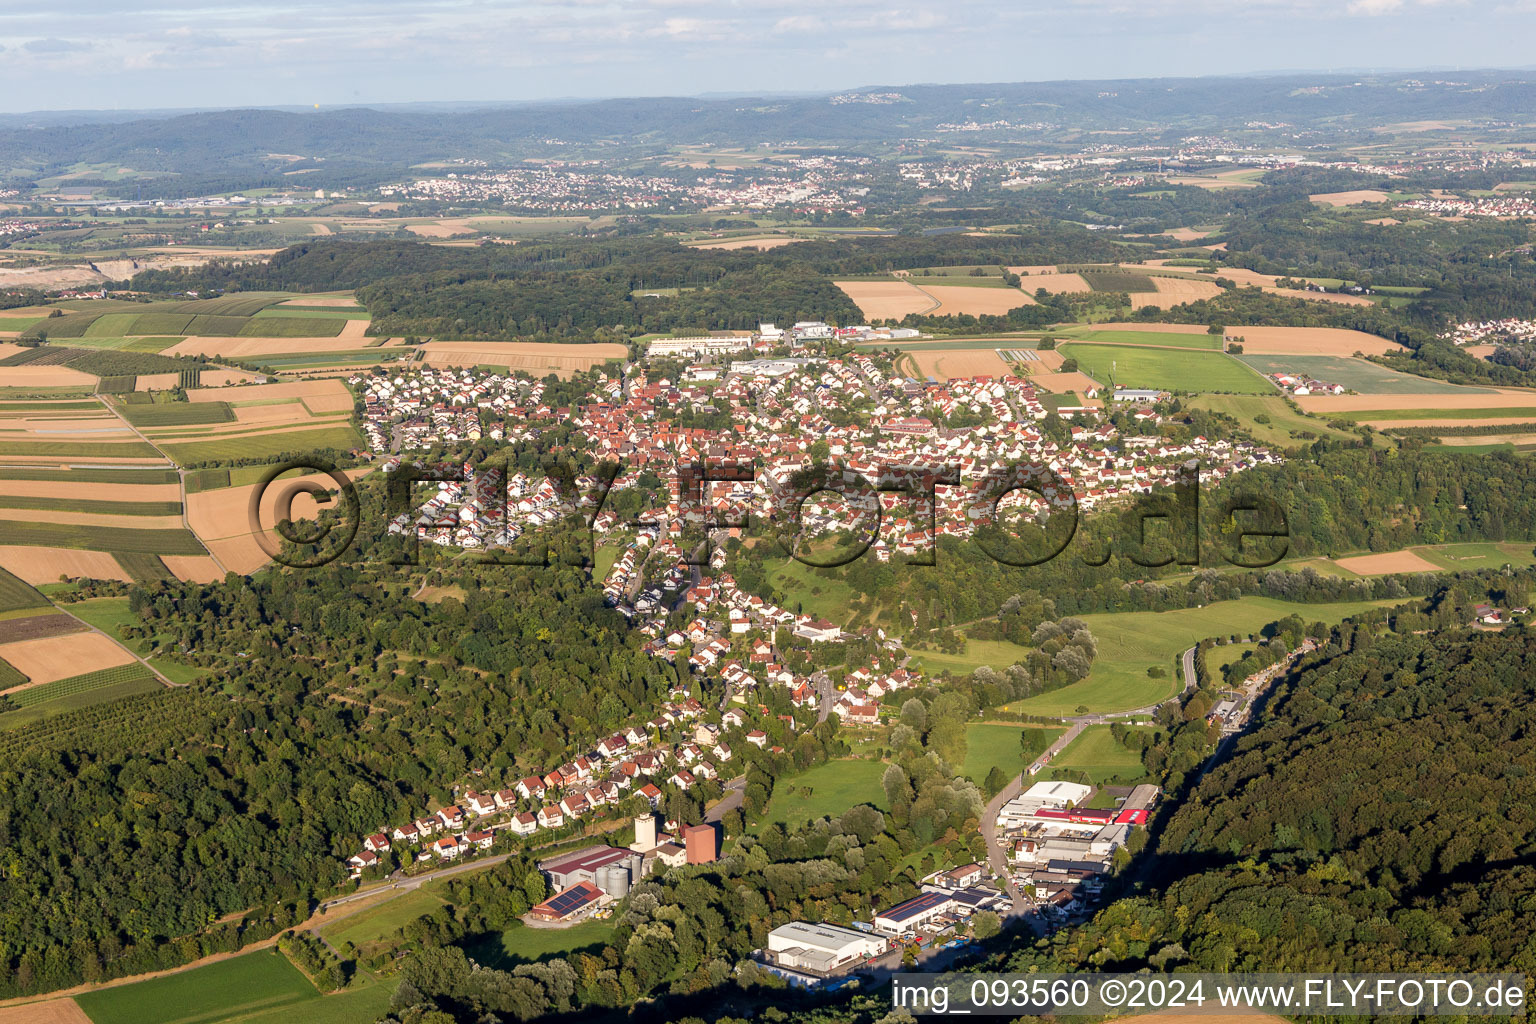 Vue aérienne de Champs agricoles et surfaces utilisables à Kirchberg an der Murr dans le département Bade-Wurtemberg, Allemagne